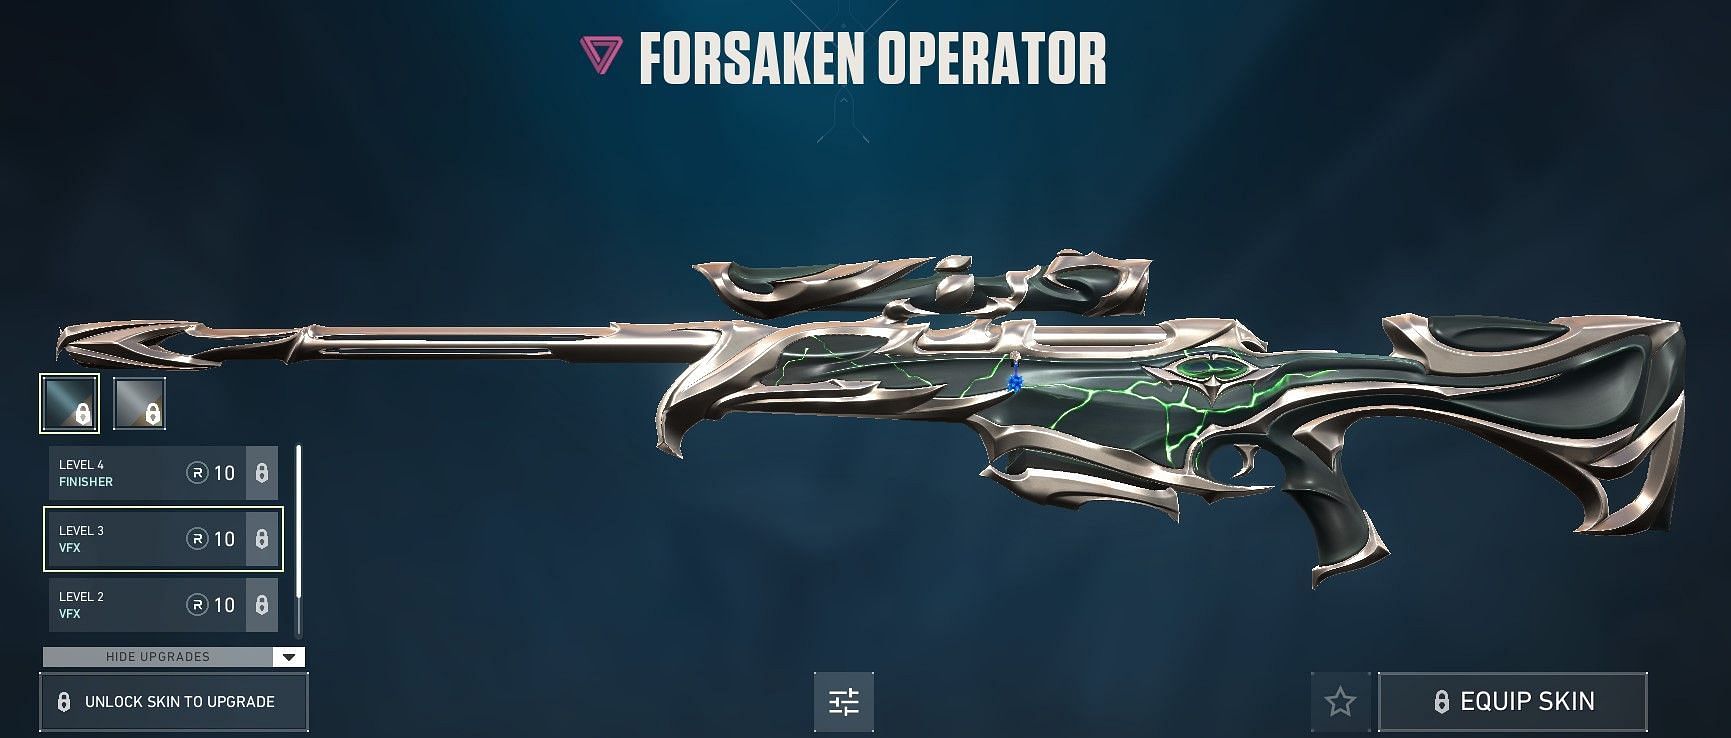 Forsaken Operator (Image via Riot Games)